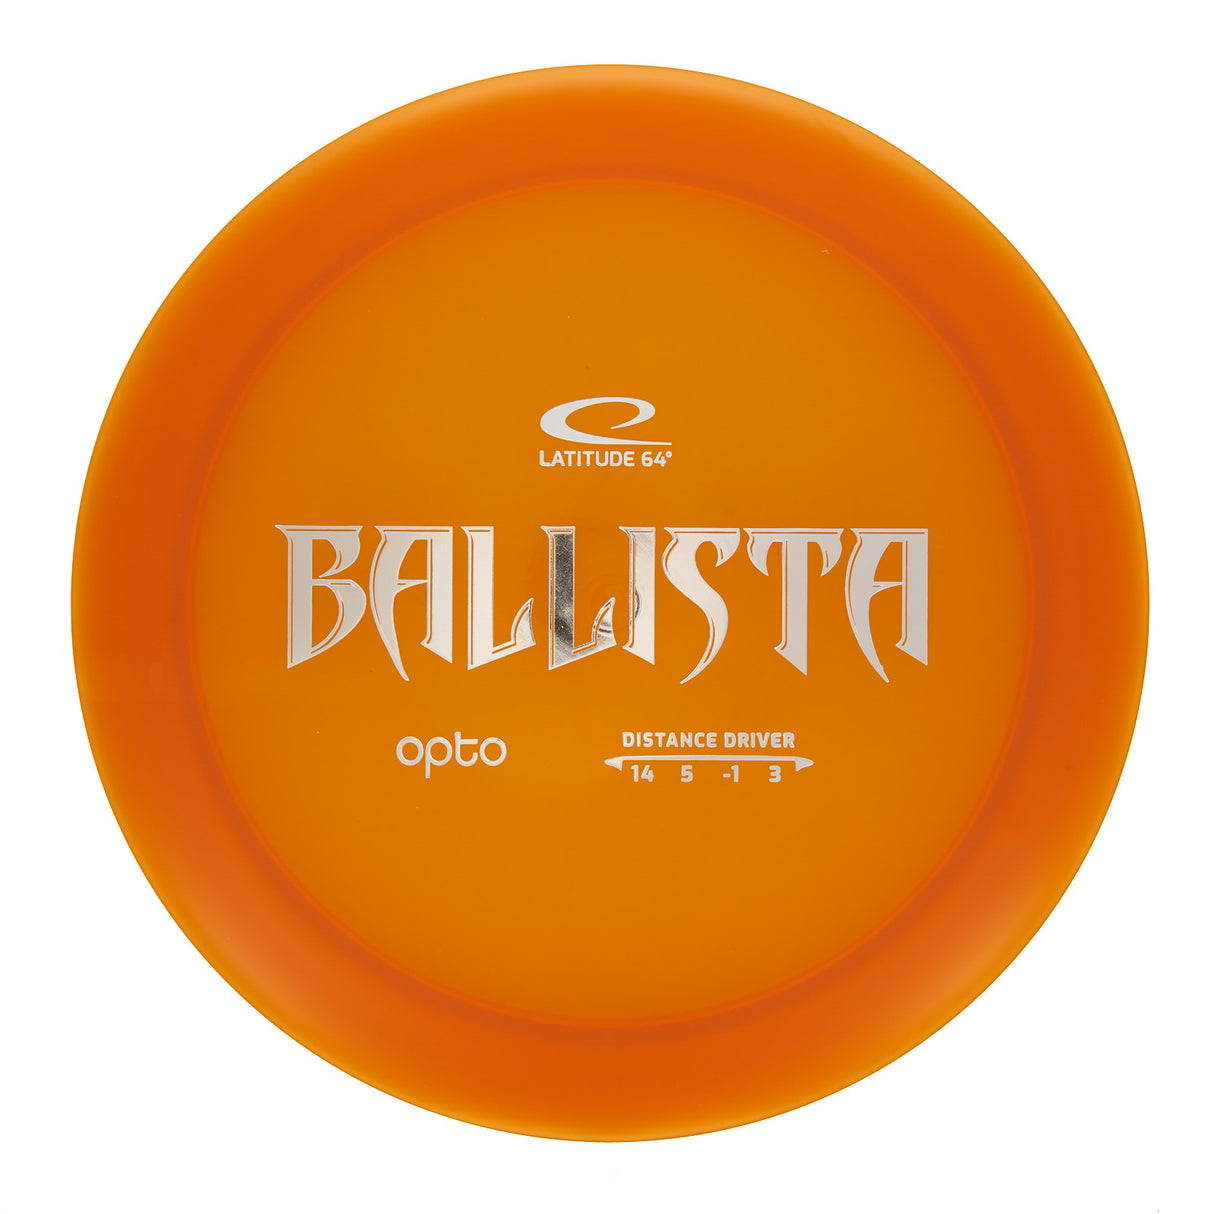 Latitude 64 Ballista - Opto 169g | Style 0001